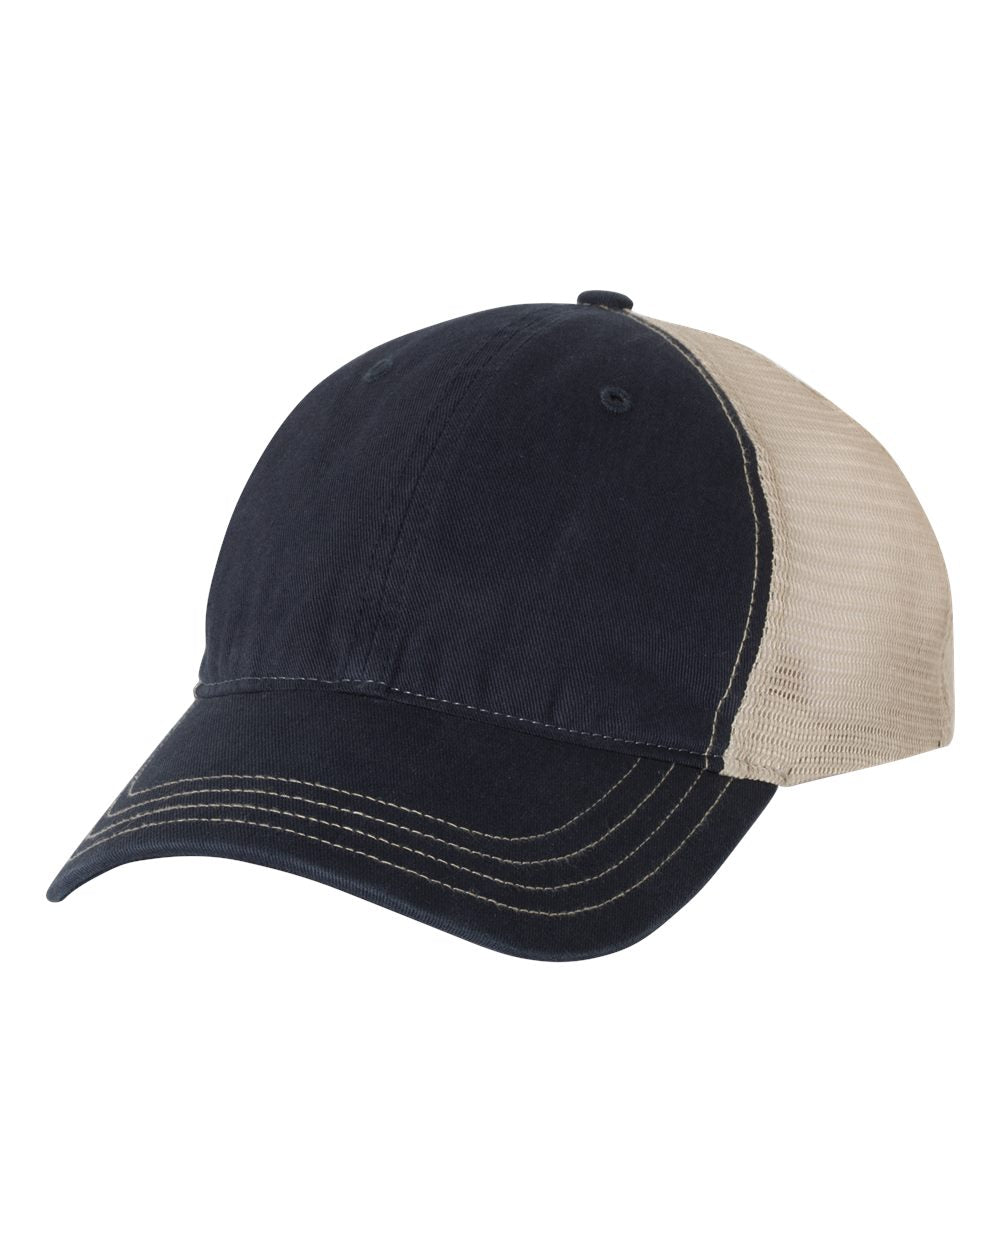 richardson cap navy khaki